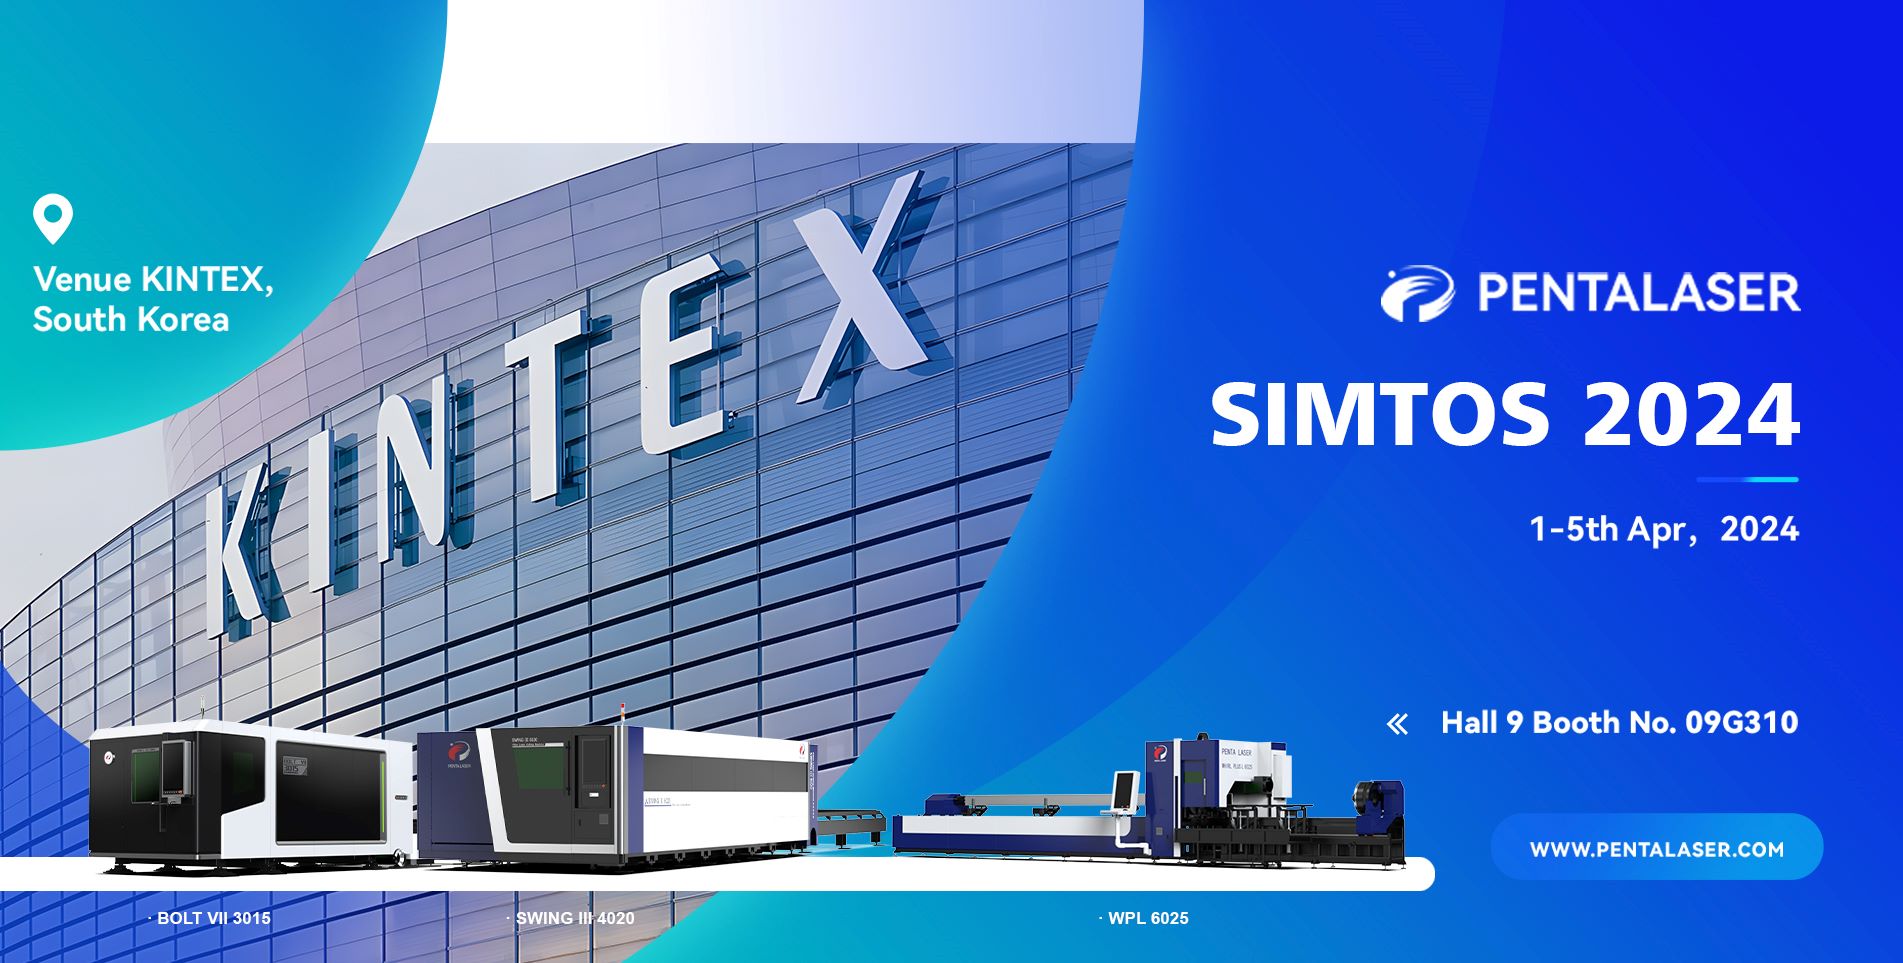 Penta Laser дебютирует на Корейской производственной выставке SIMOTS 2024, демонстрируя новые достижения в технологии лазерной резки.